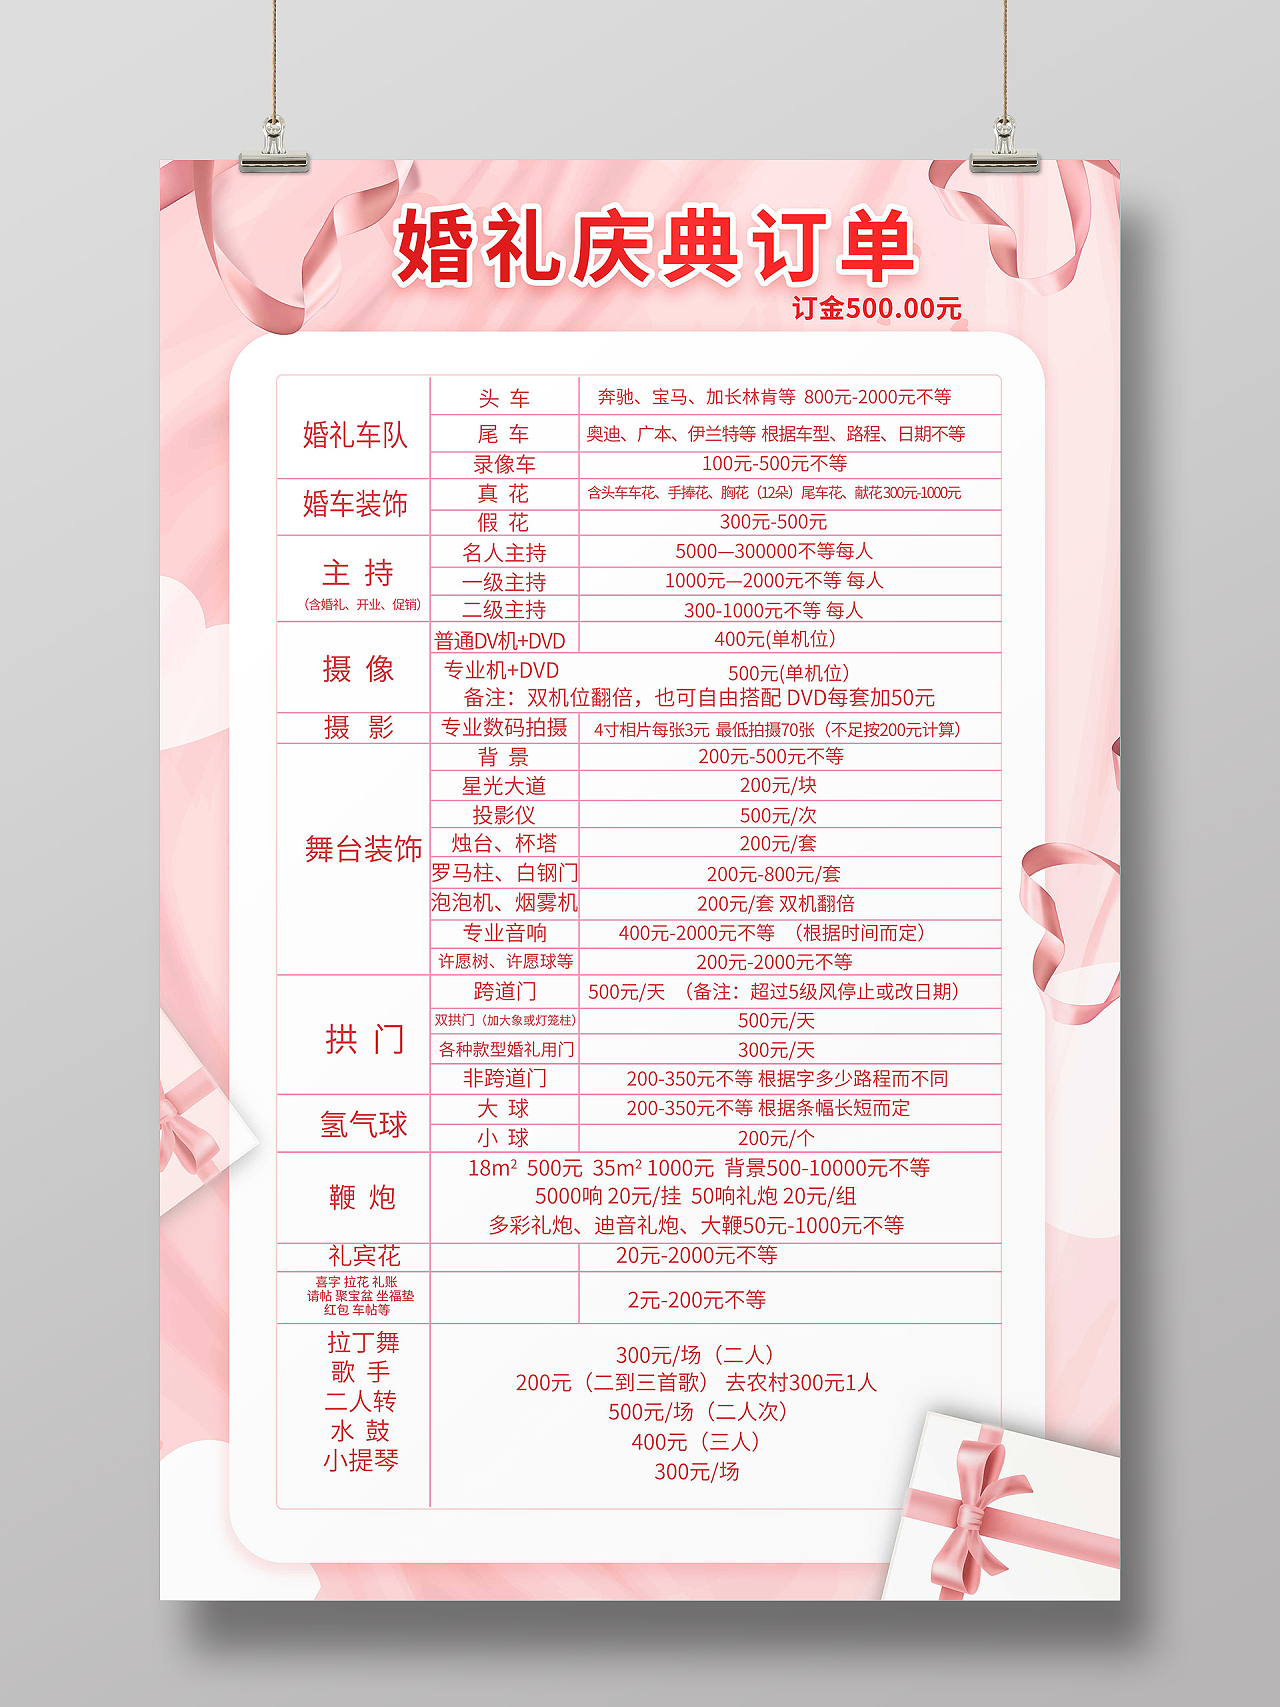 粉红色背景浪漫婚礼庆典订单宣传海报设计婚庆价目表